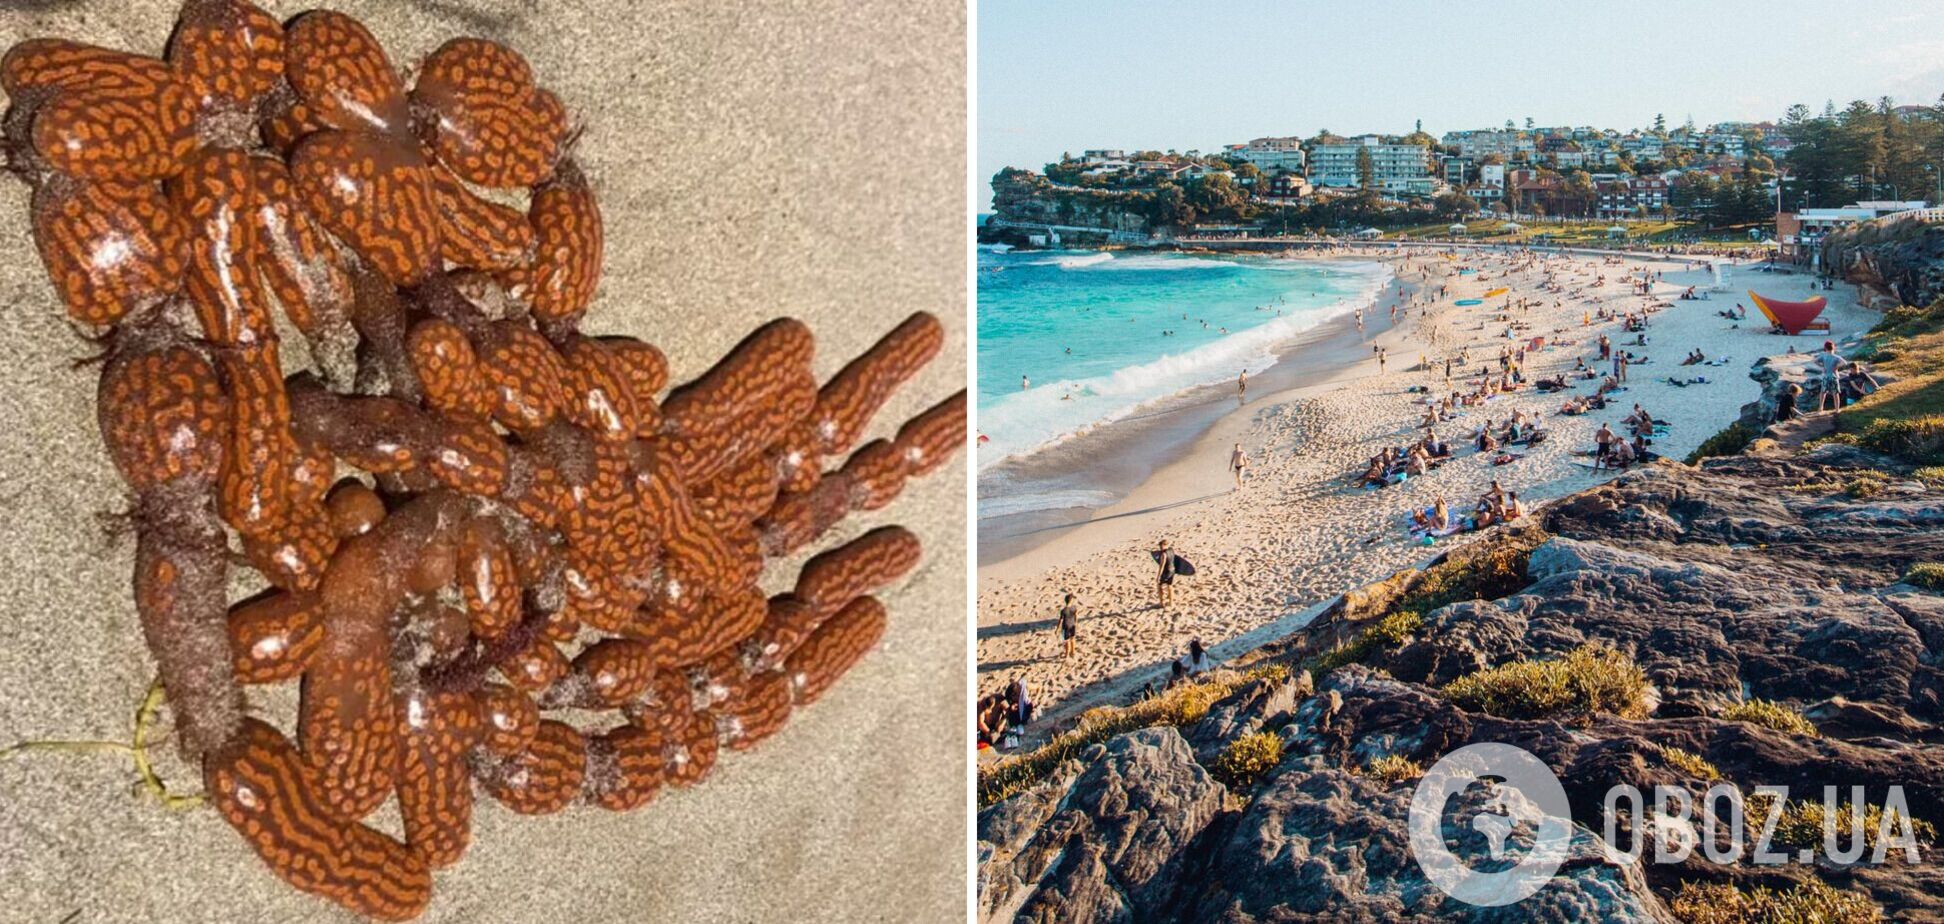 Пляж в Австралії вкрило загадковими істотами, схожими на інопланетян. Фото